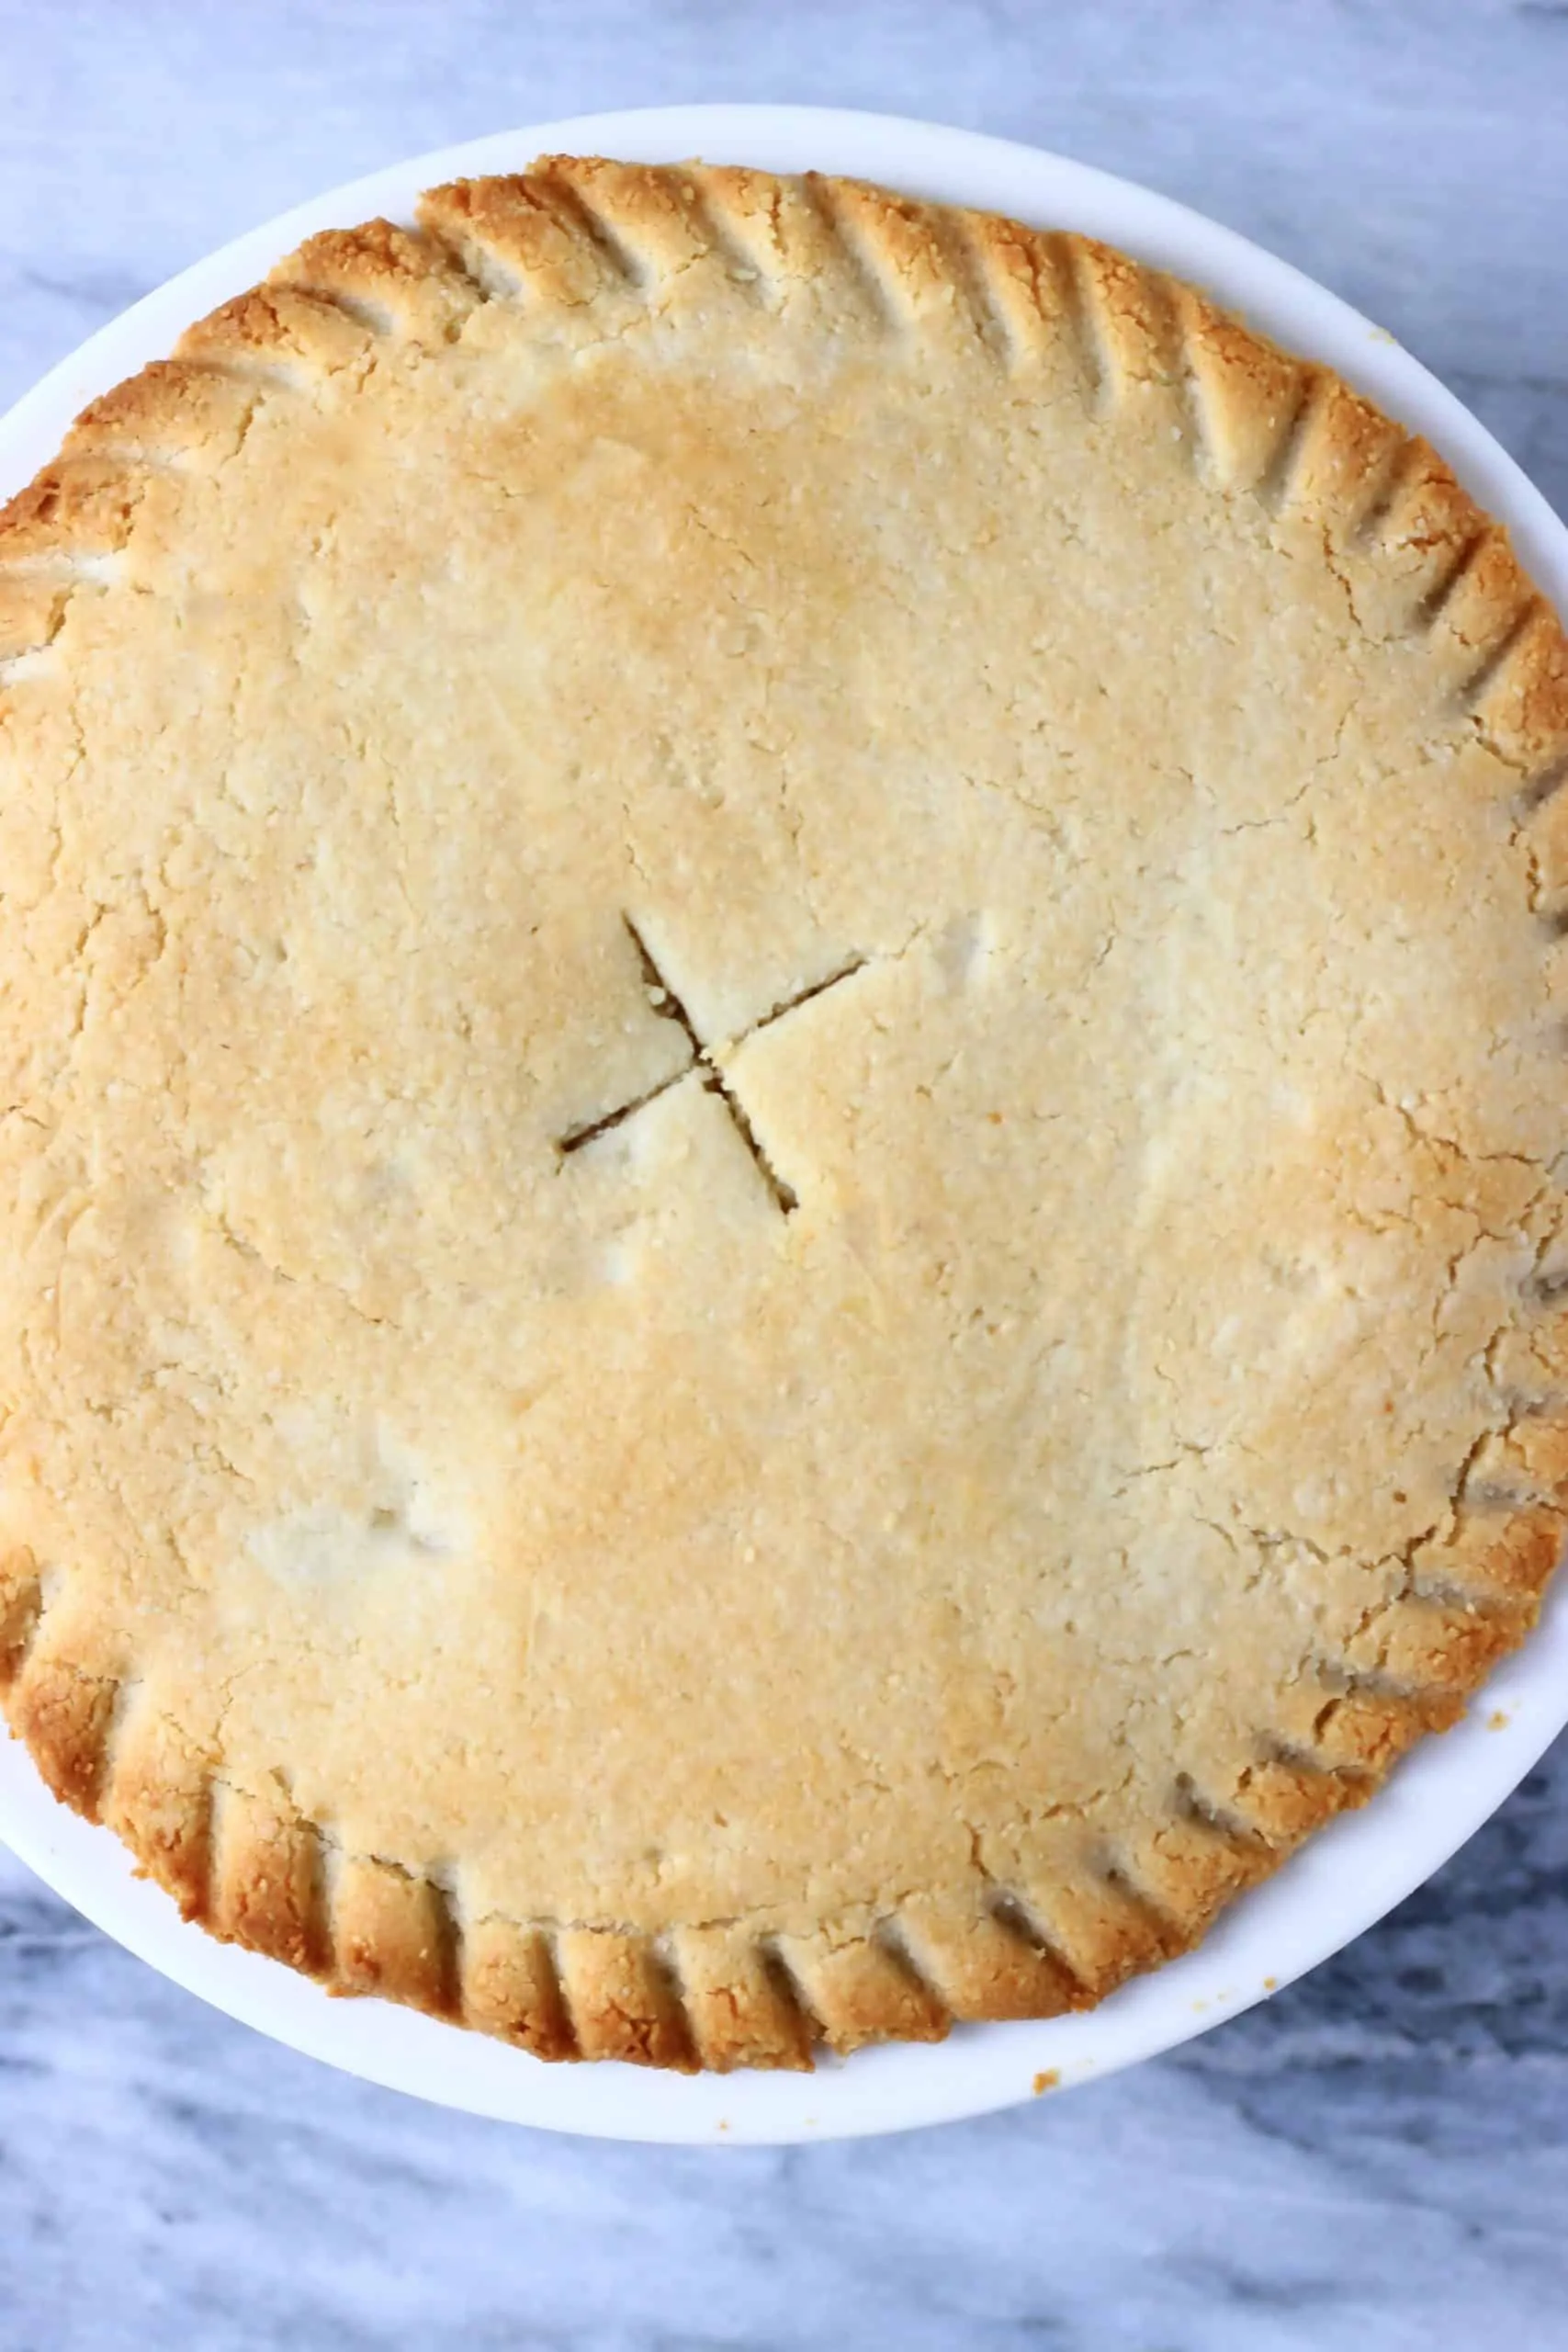 A gluten-free vegan apple pie in a pie dish